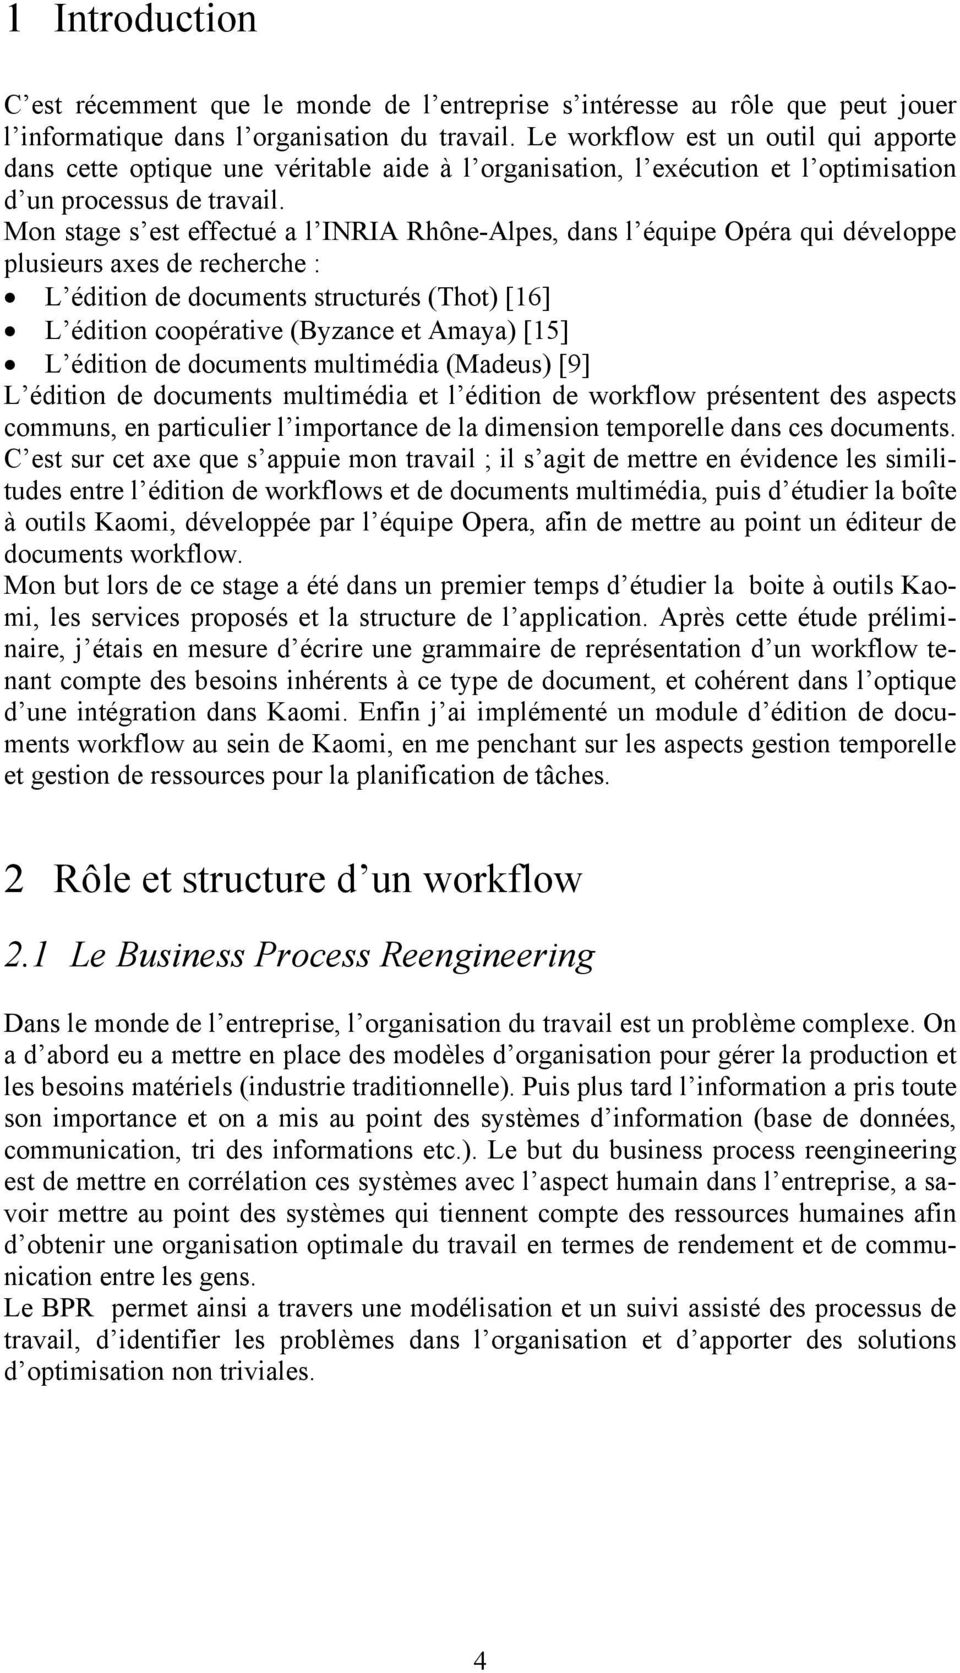 Mon stage s est effectué a l INRIA Rhône-Alpes, dans l équipe Opéra qui développe plusieurs axes de recherche : L édition de documents structurés (Thot) [16] L édition coopérative (Byzance et Amaya)